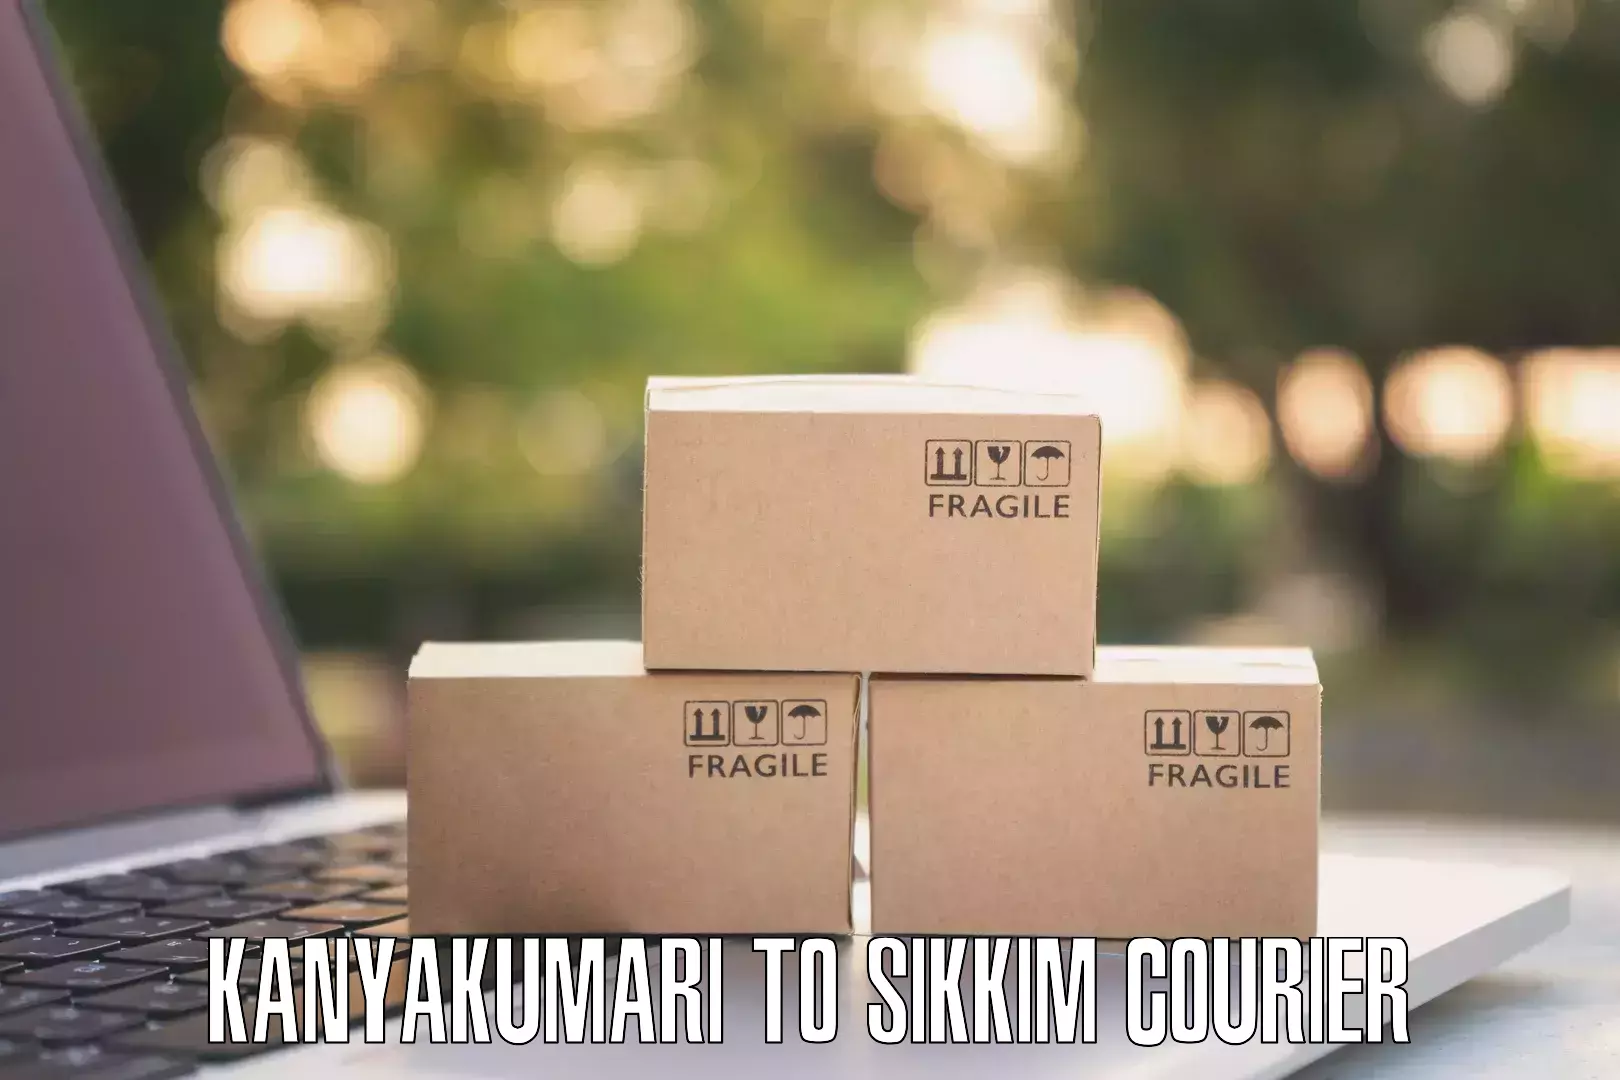 High-performance logistics Kanyakumari to Singtam